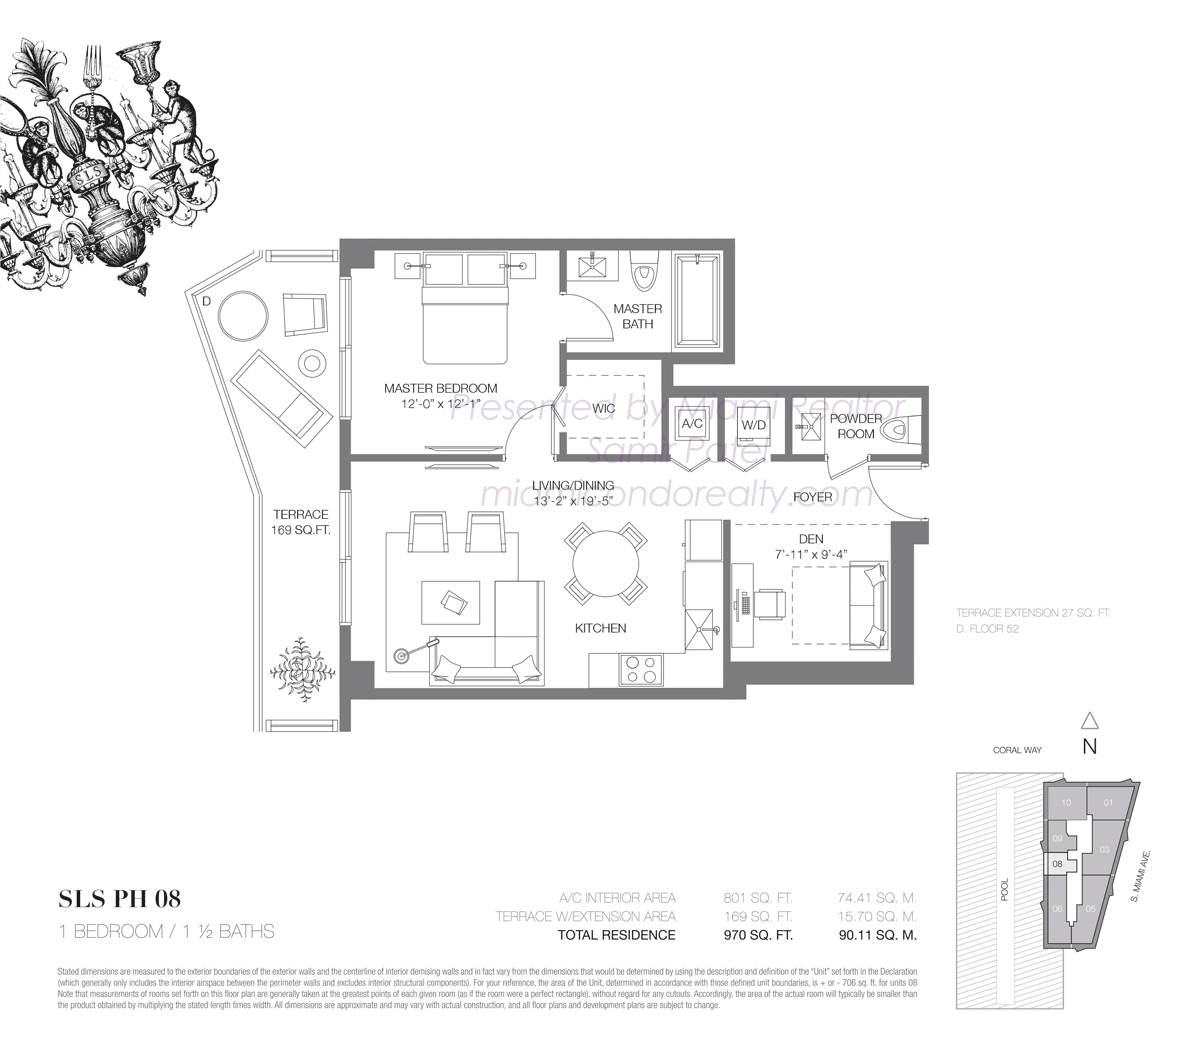 SLS Brickell Penthouse 08 Floorplan